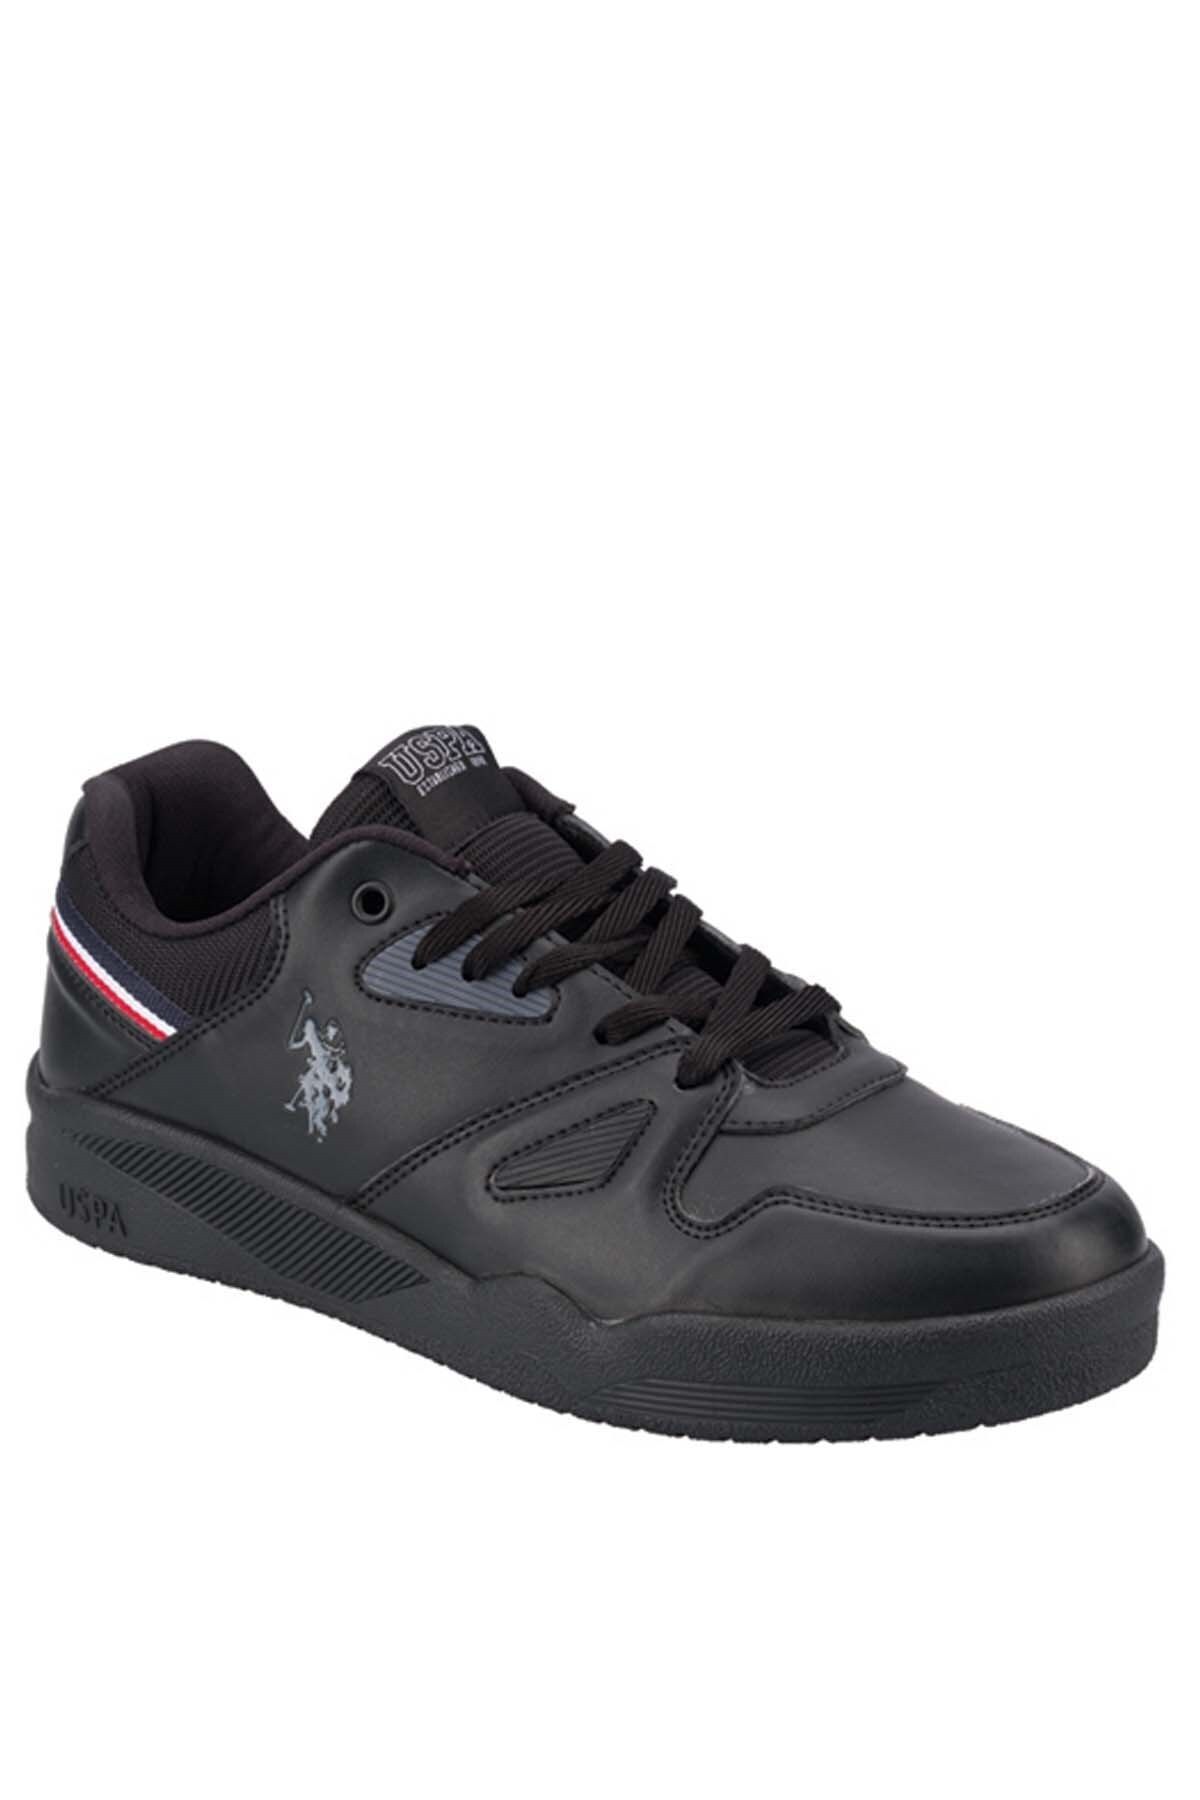 U.S. Polo Assn. PARKER Siyah Erkek Sneaker Ayakkabı 100549165